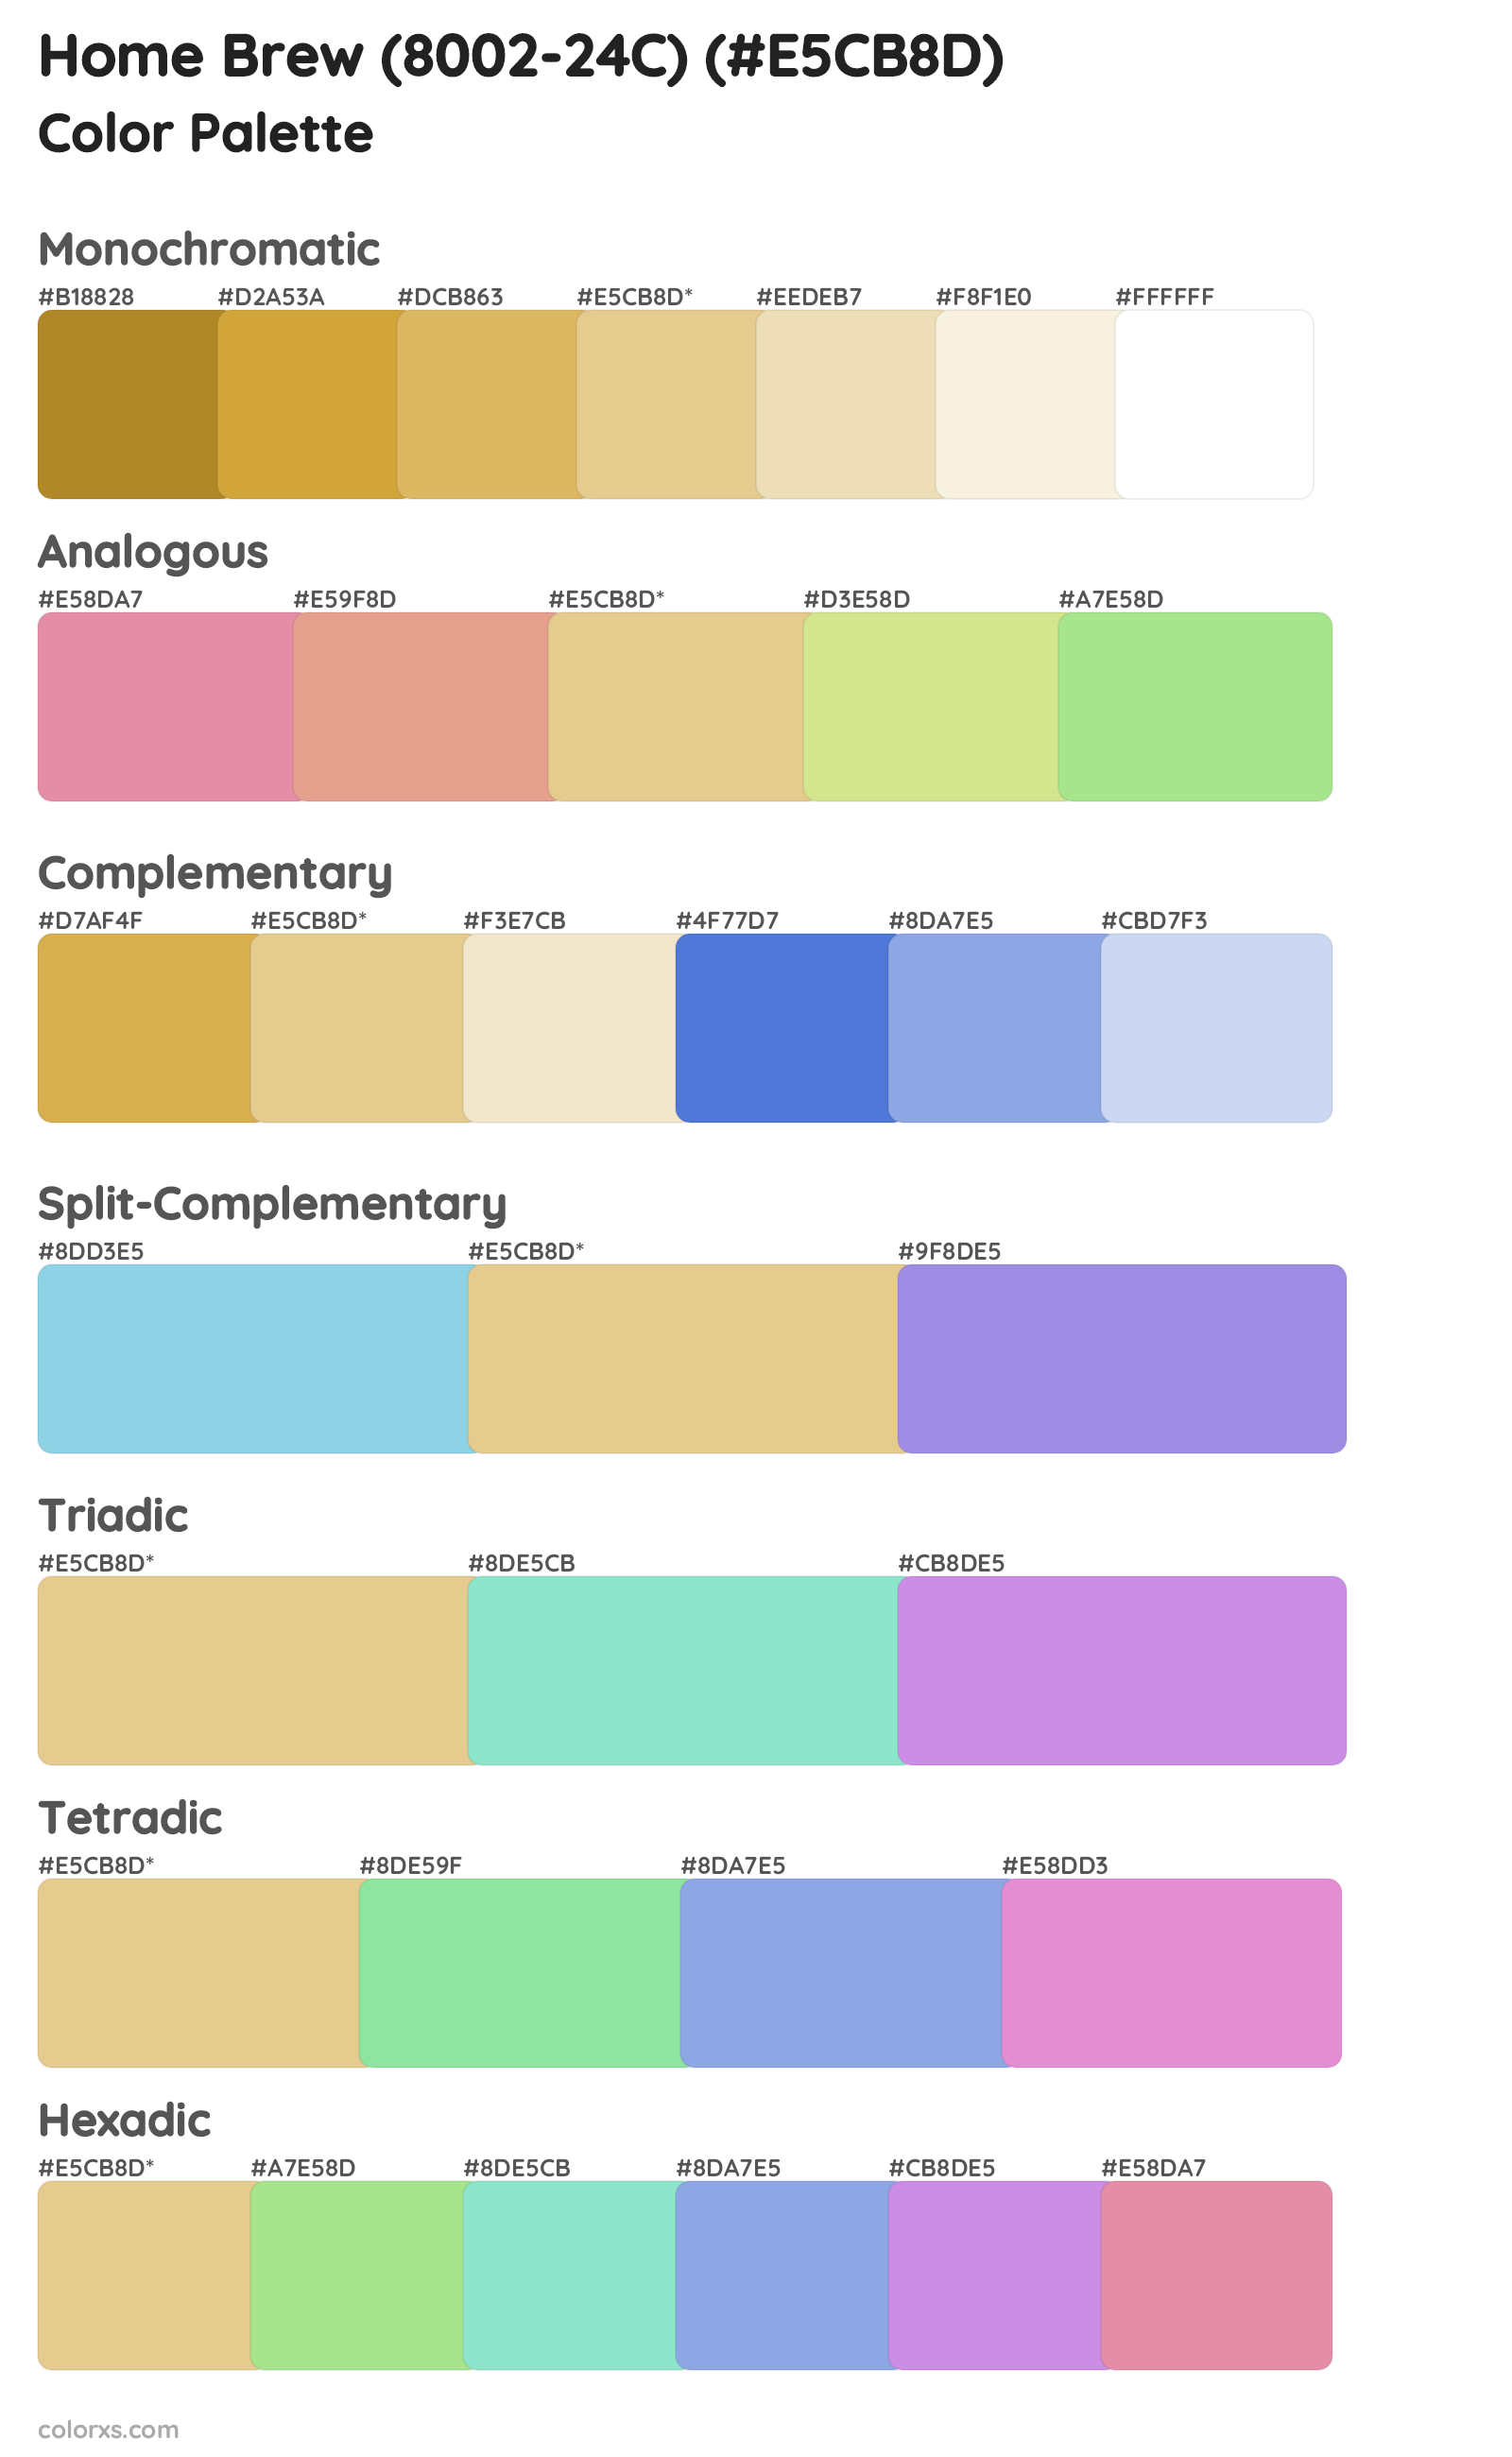 Home Brew (8002-24C) Color Scheme Palettes